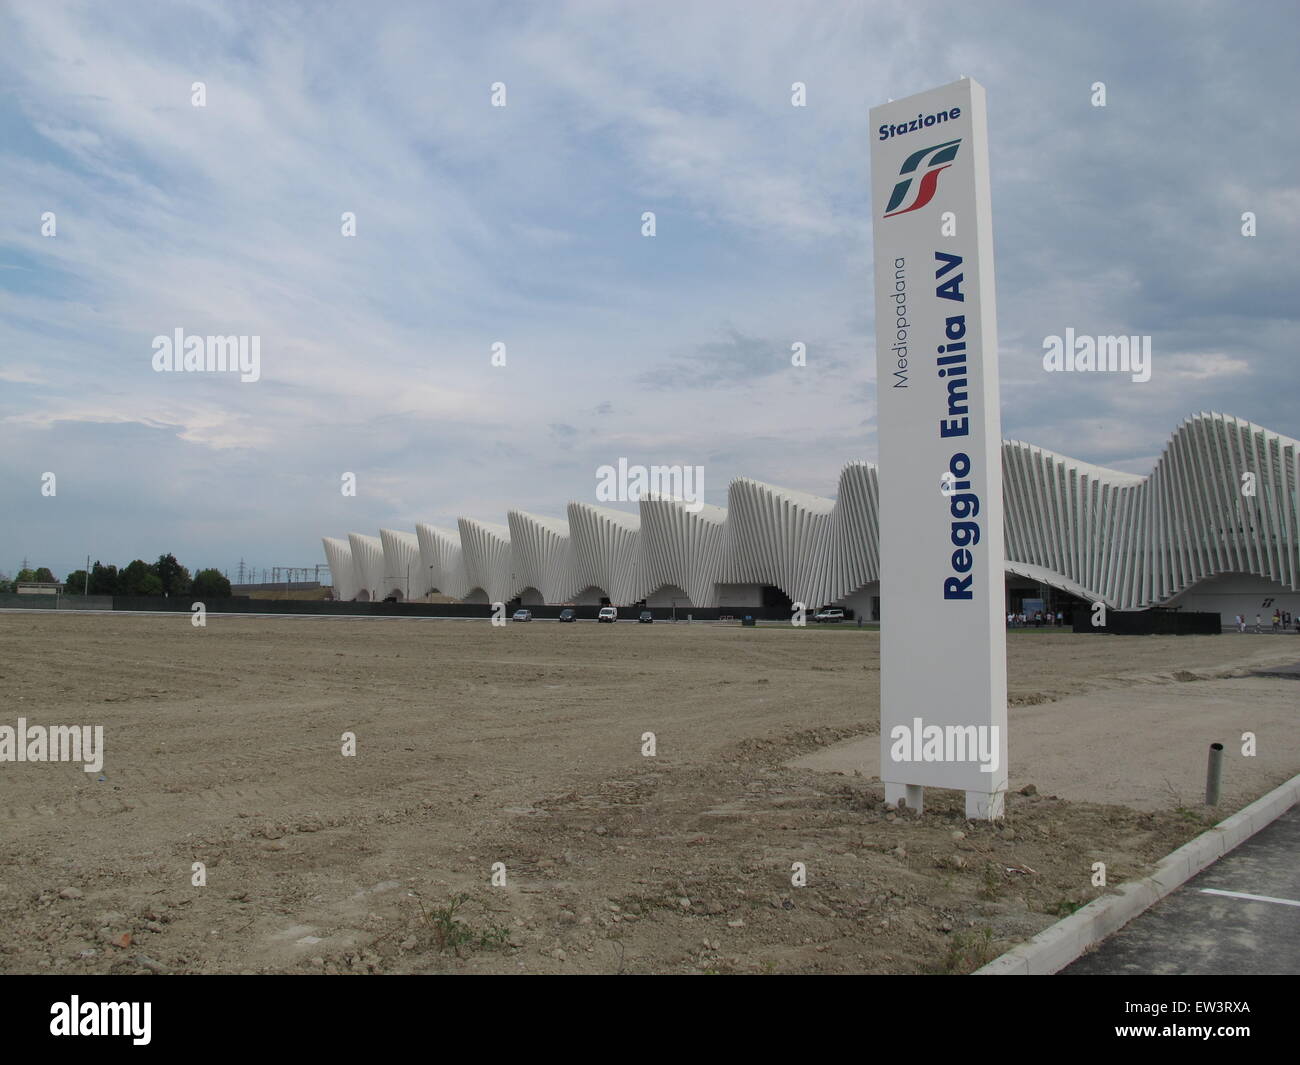 Gare ferroviaire à grande vitesse, AV Mediopadana, architecte Santiago Calatrava, Reggio nell'Emilia, Province de Reggio Emilia, Italie Banque D'Images